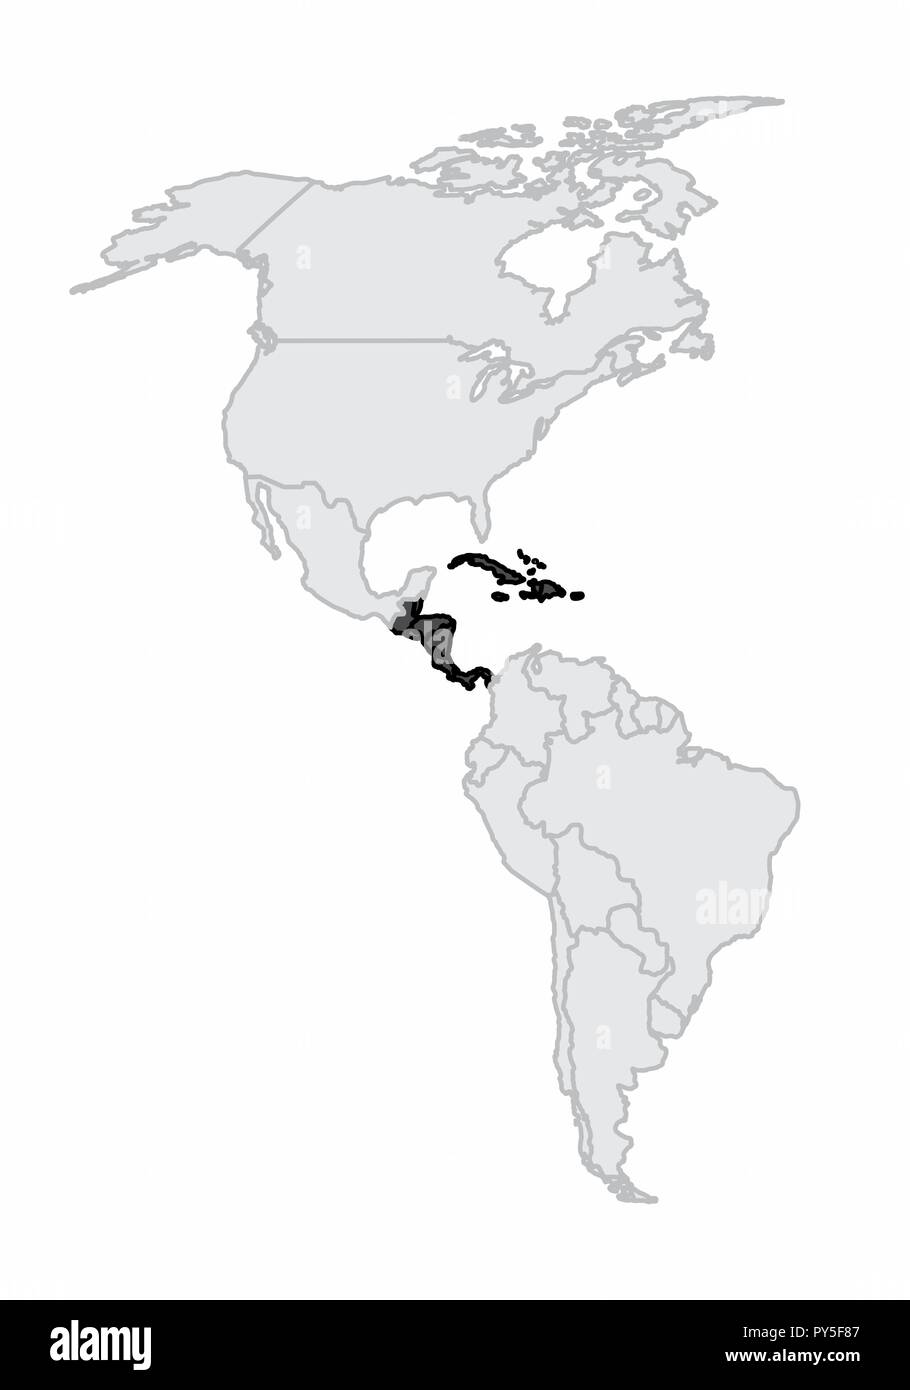 Un mapa del continente americano con la América central y el Caribe destacó Ilustración del Vector